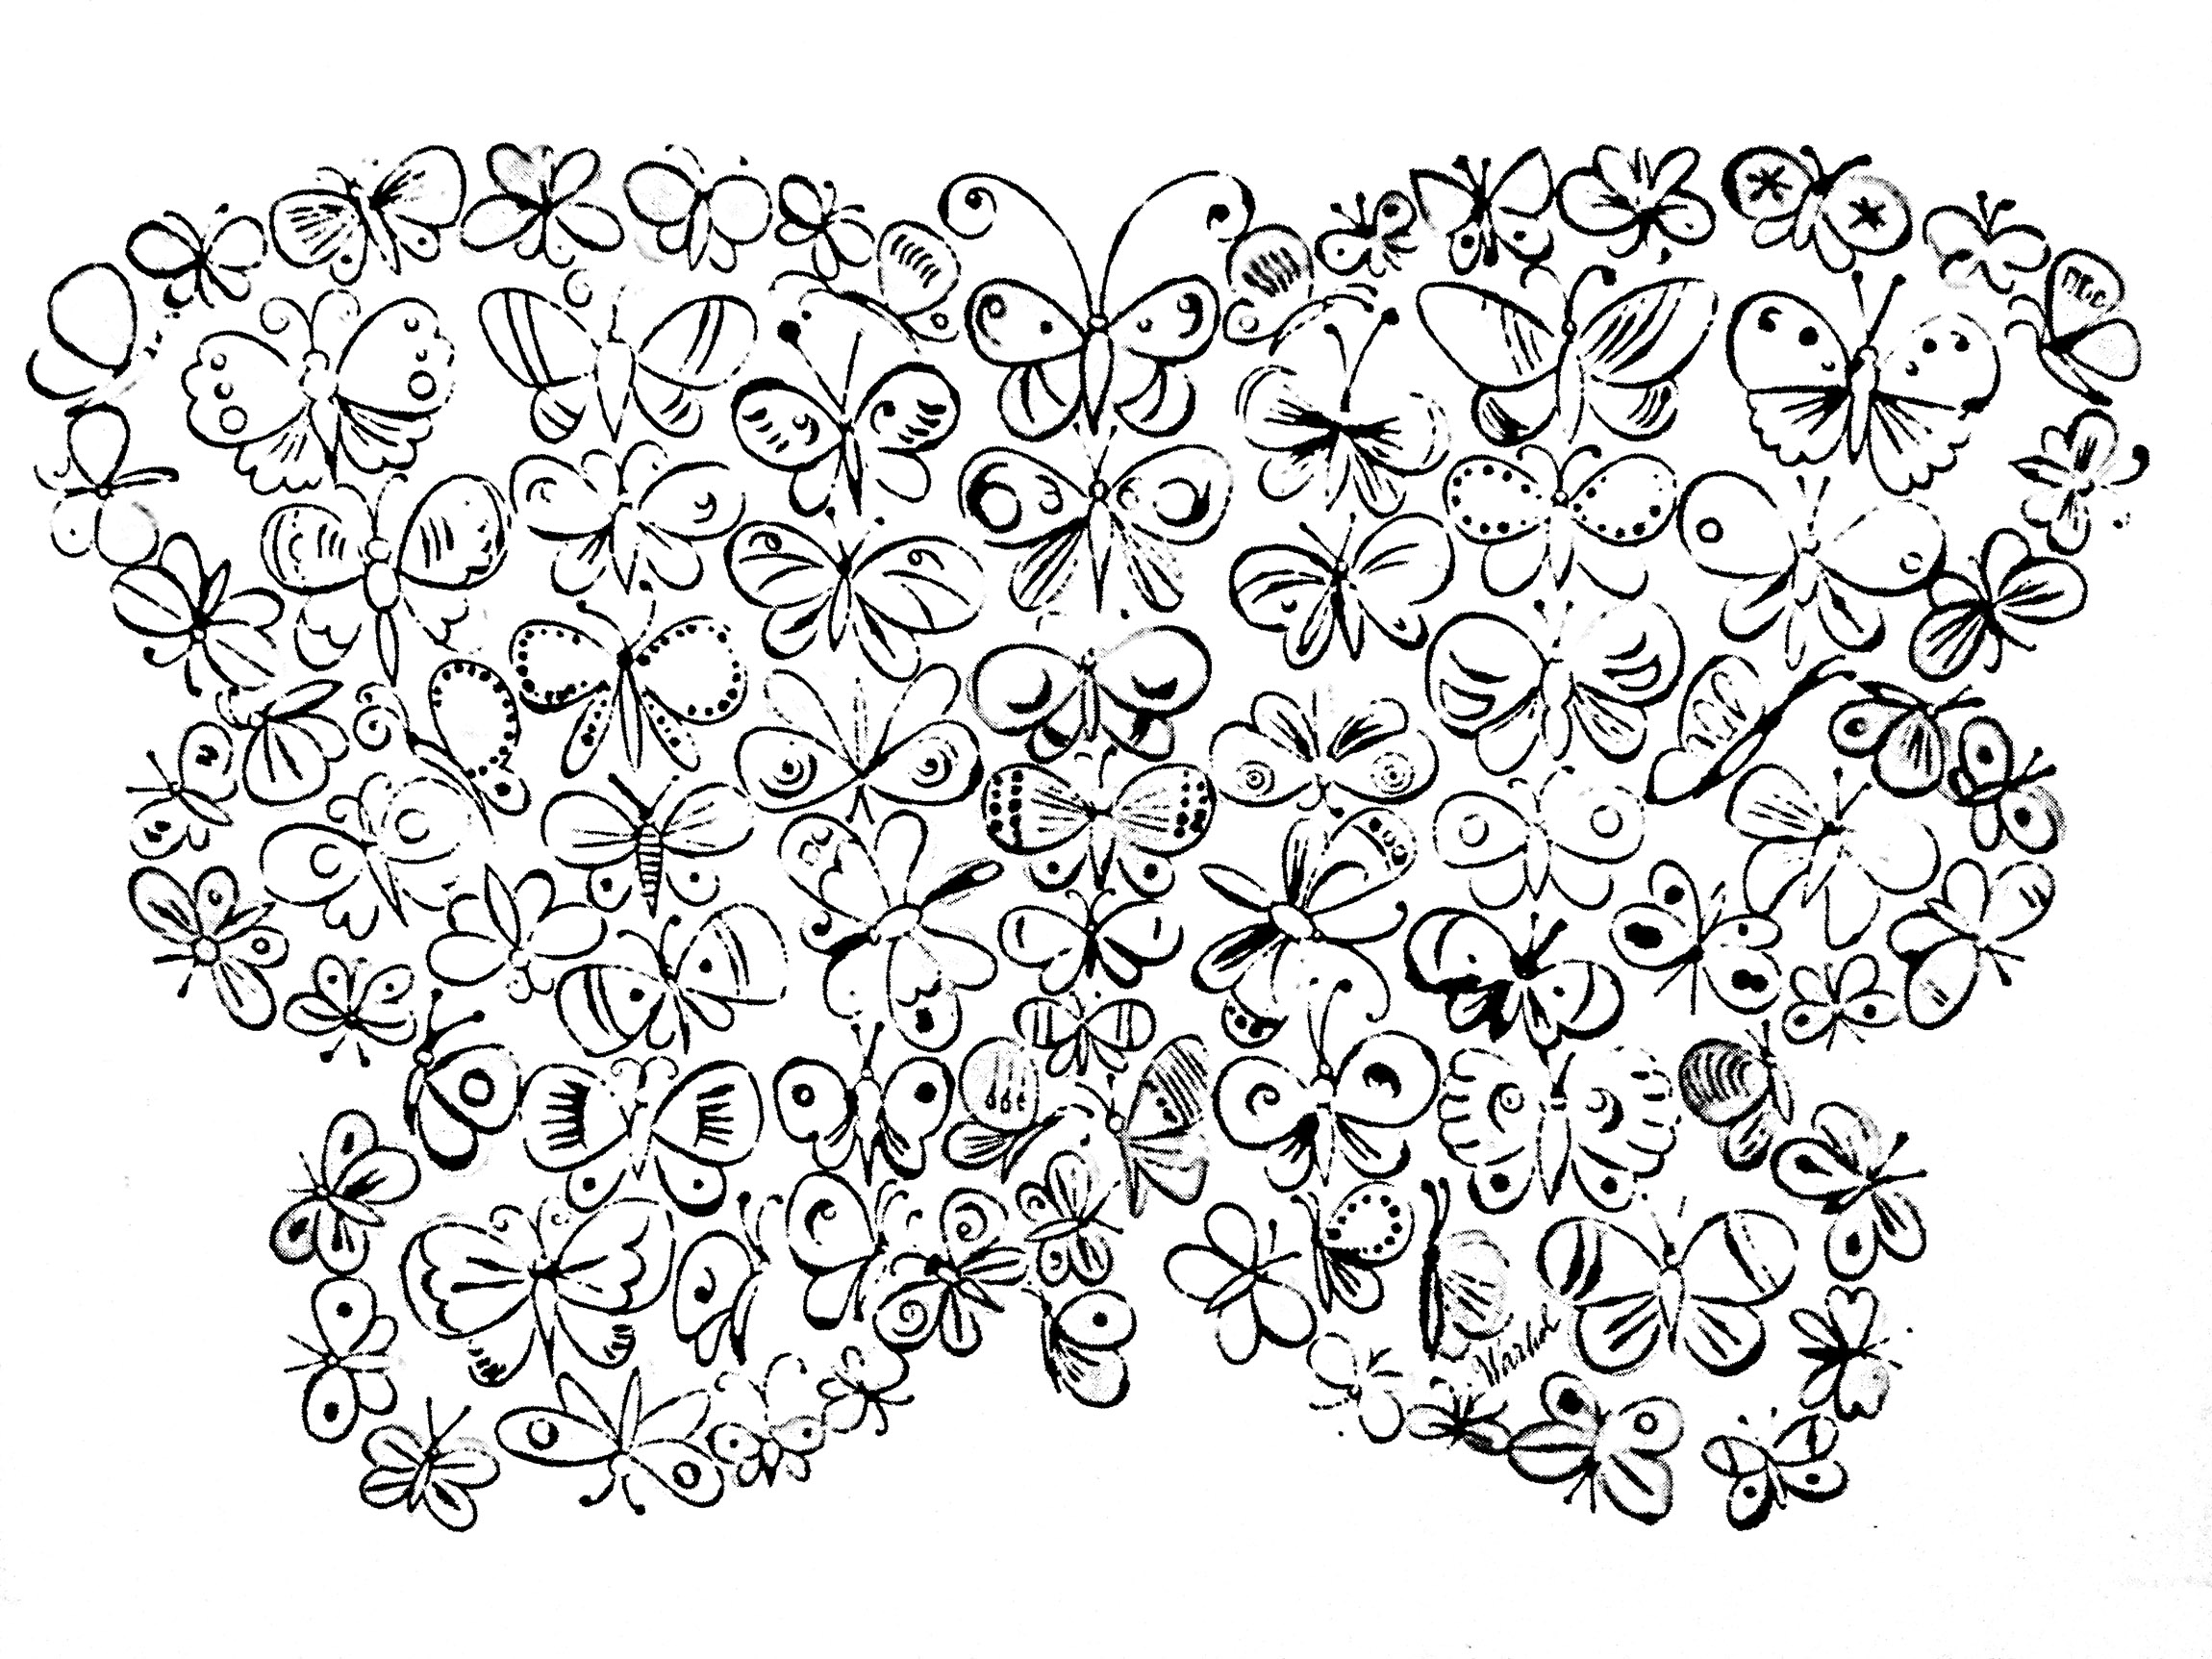 Coloriage complexe créé à partir d'un dessin de Papillons, par Andy Warhol